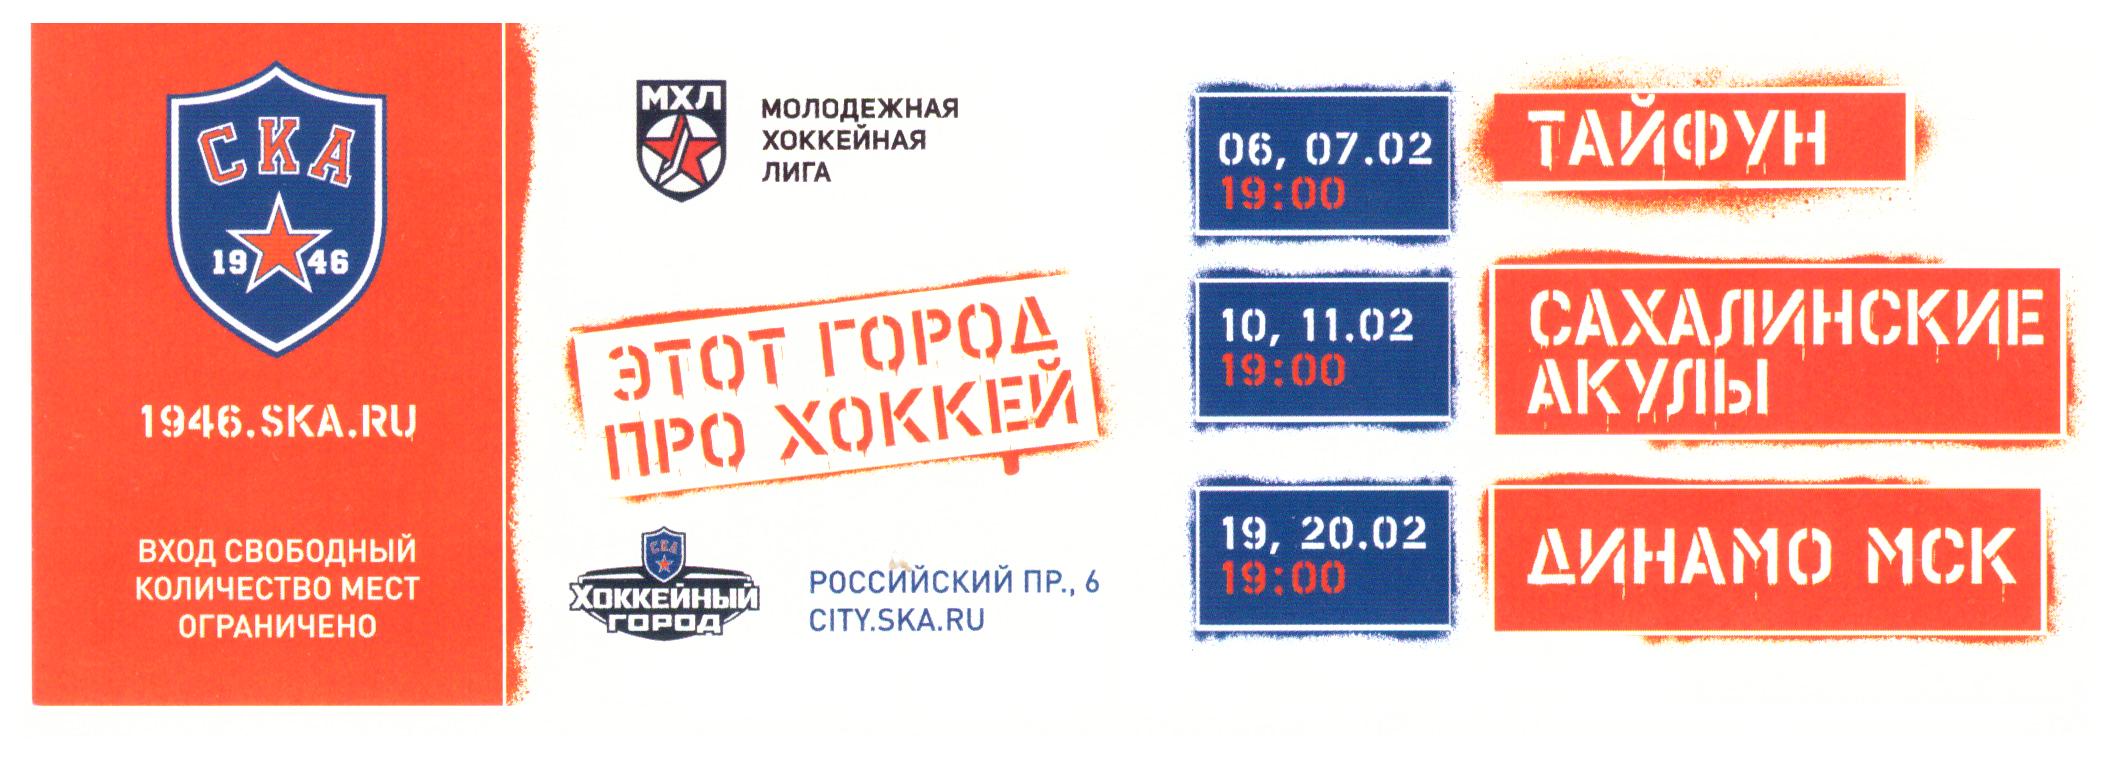 Хоккей матчи купить билеты москва. Абонементы на хоккейные матчи. Продам гараж на хоккейном матче.